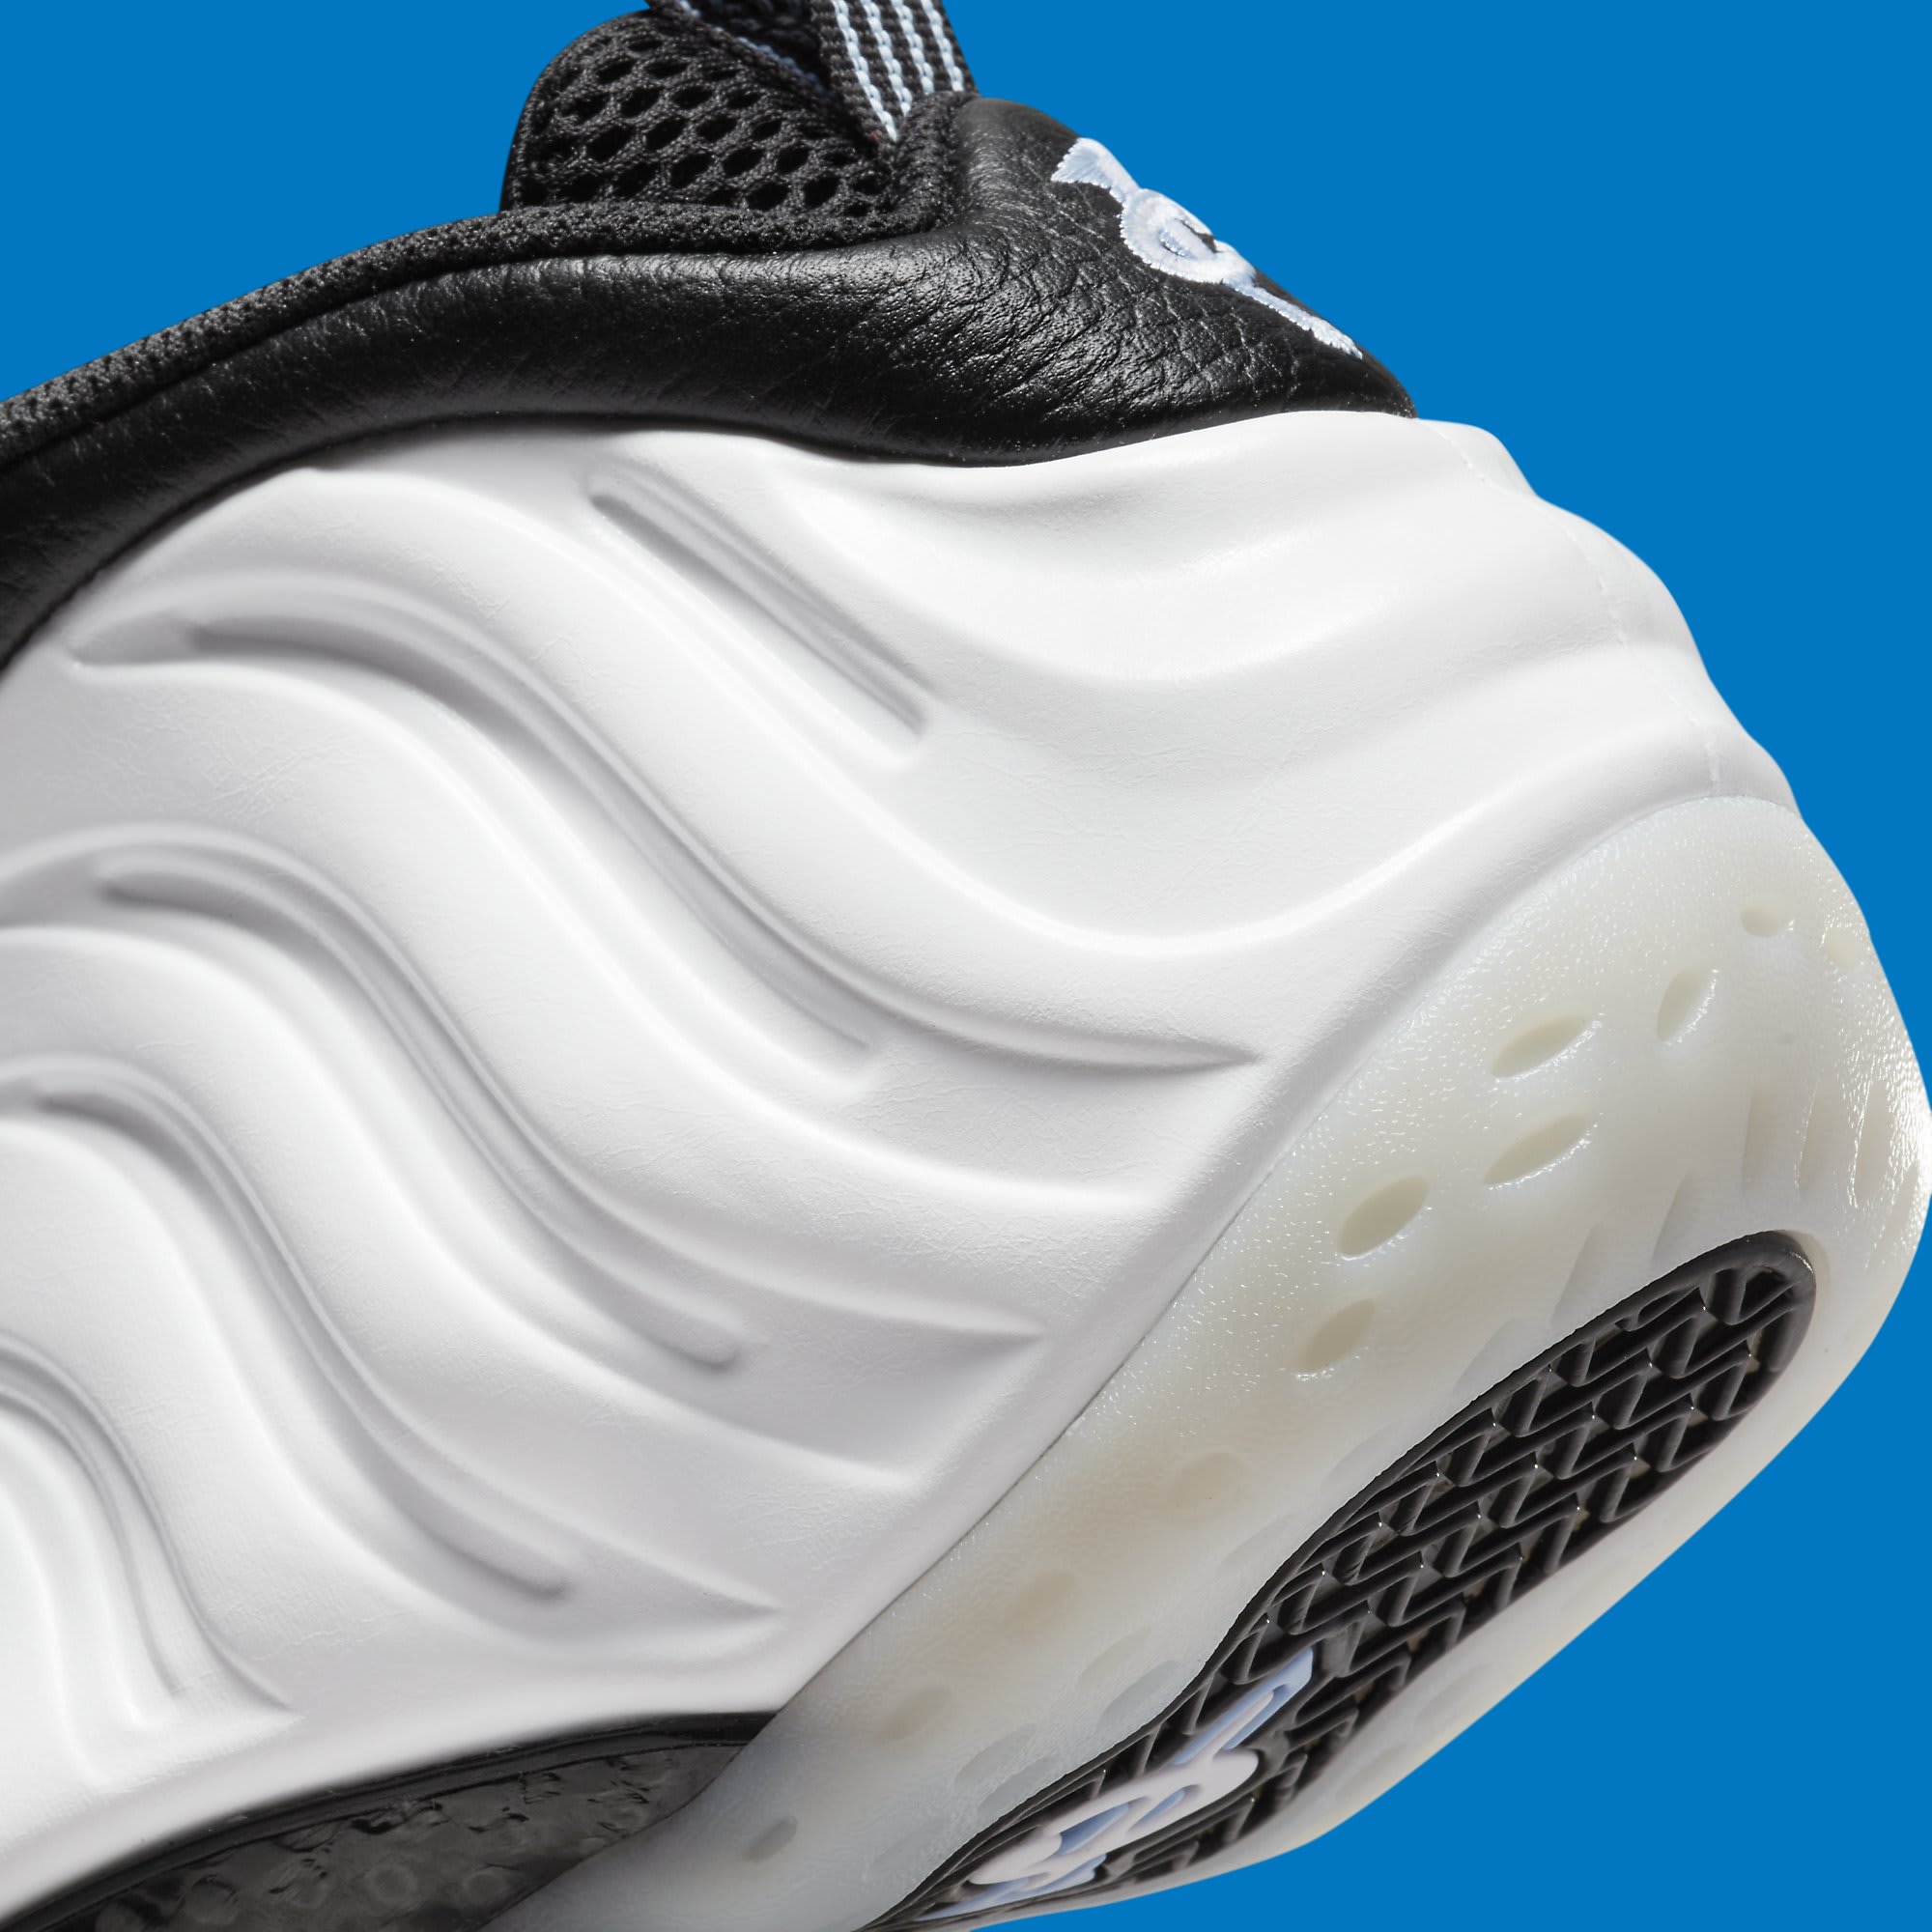 Nike Air Foamposite One White Penny Hardaway PE Release Date DV0815-100 Heel Detail